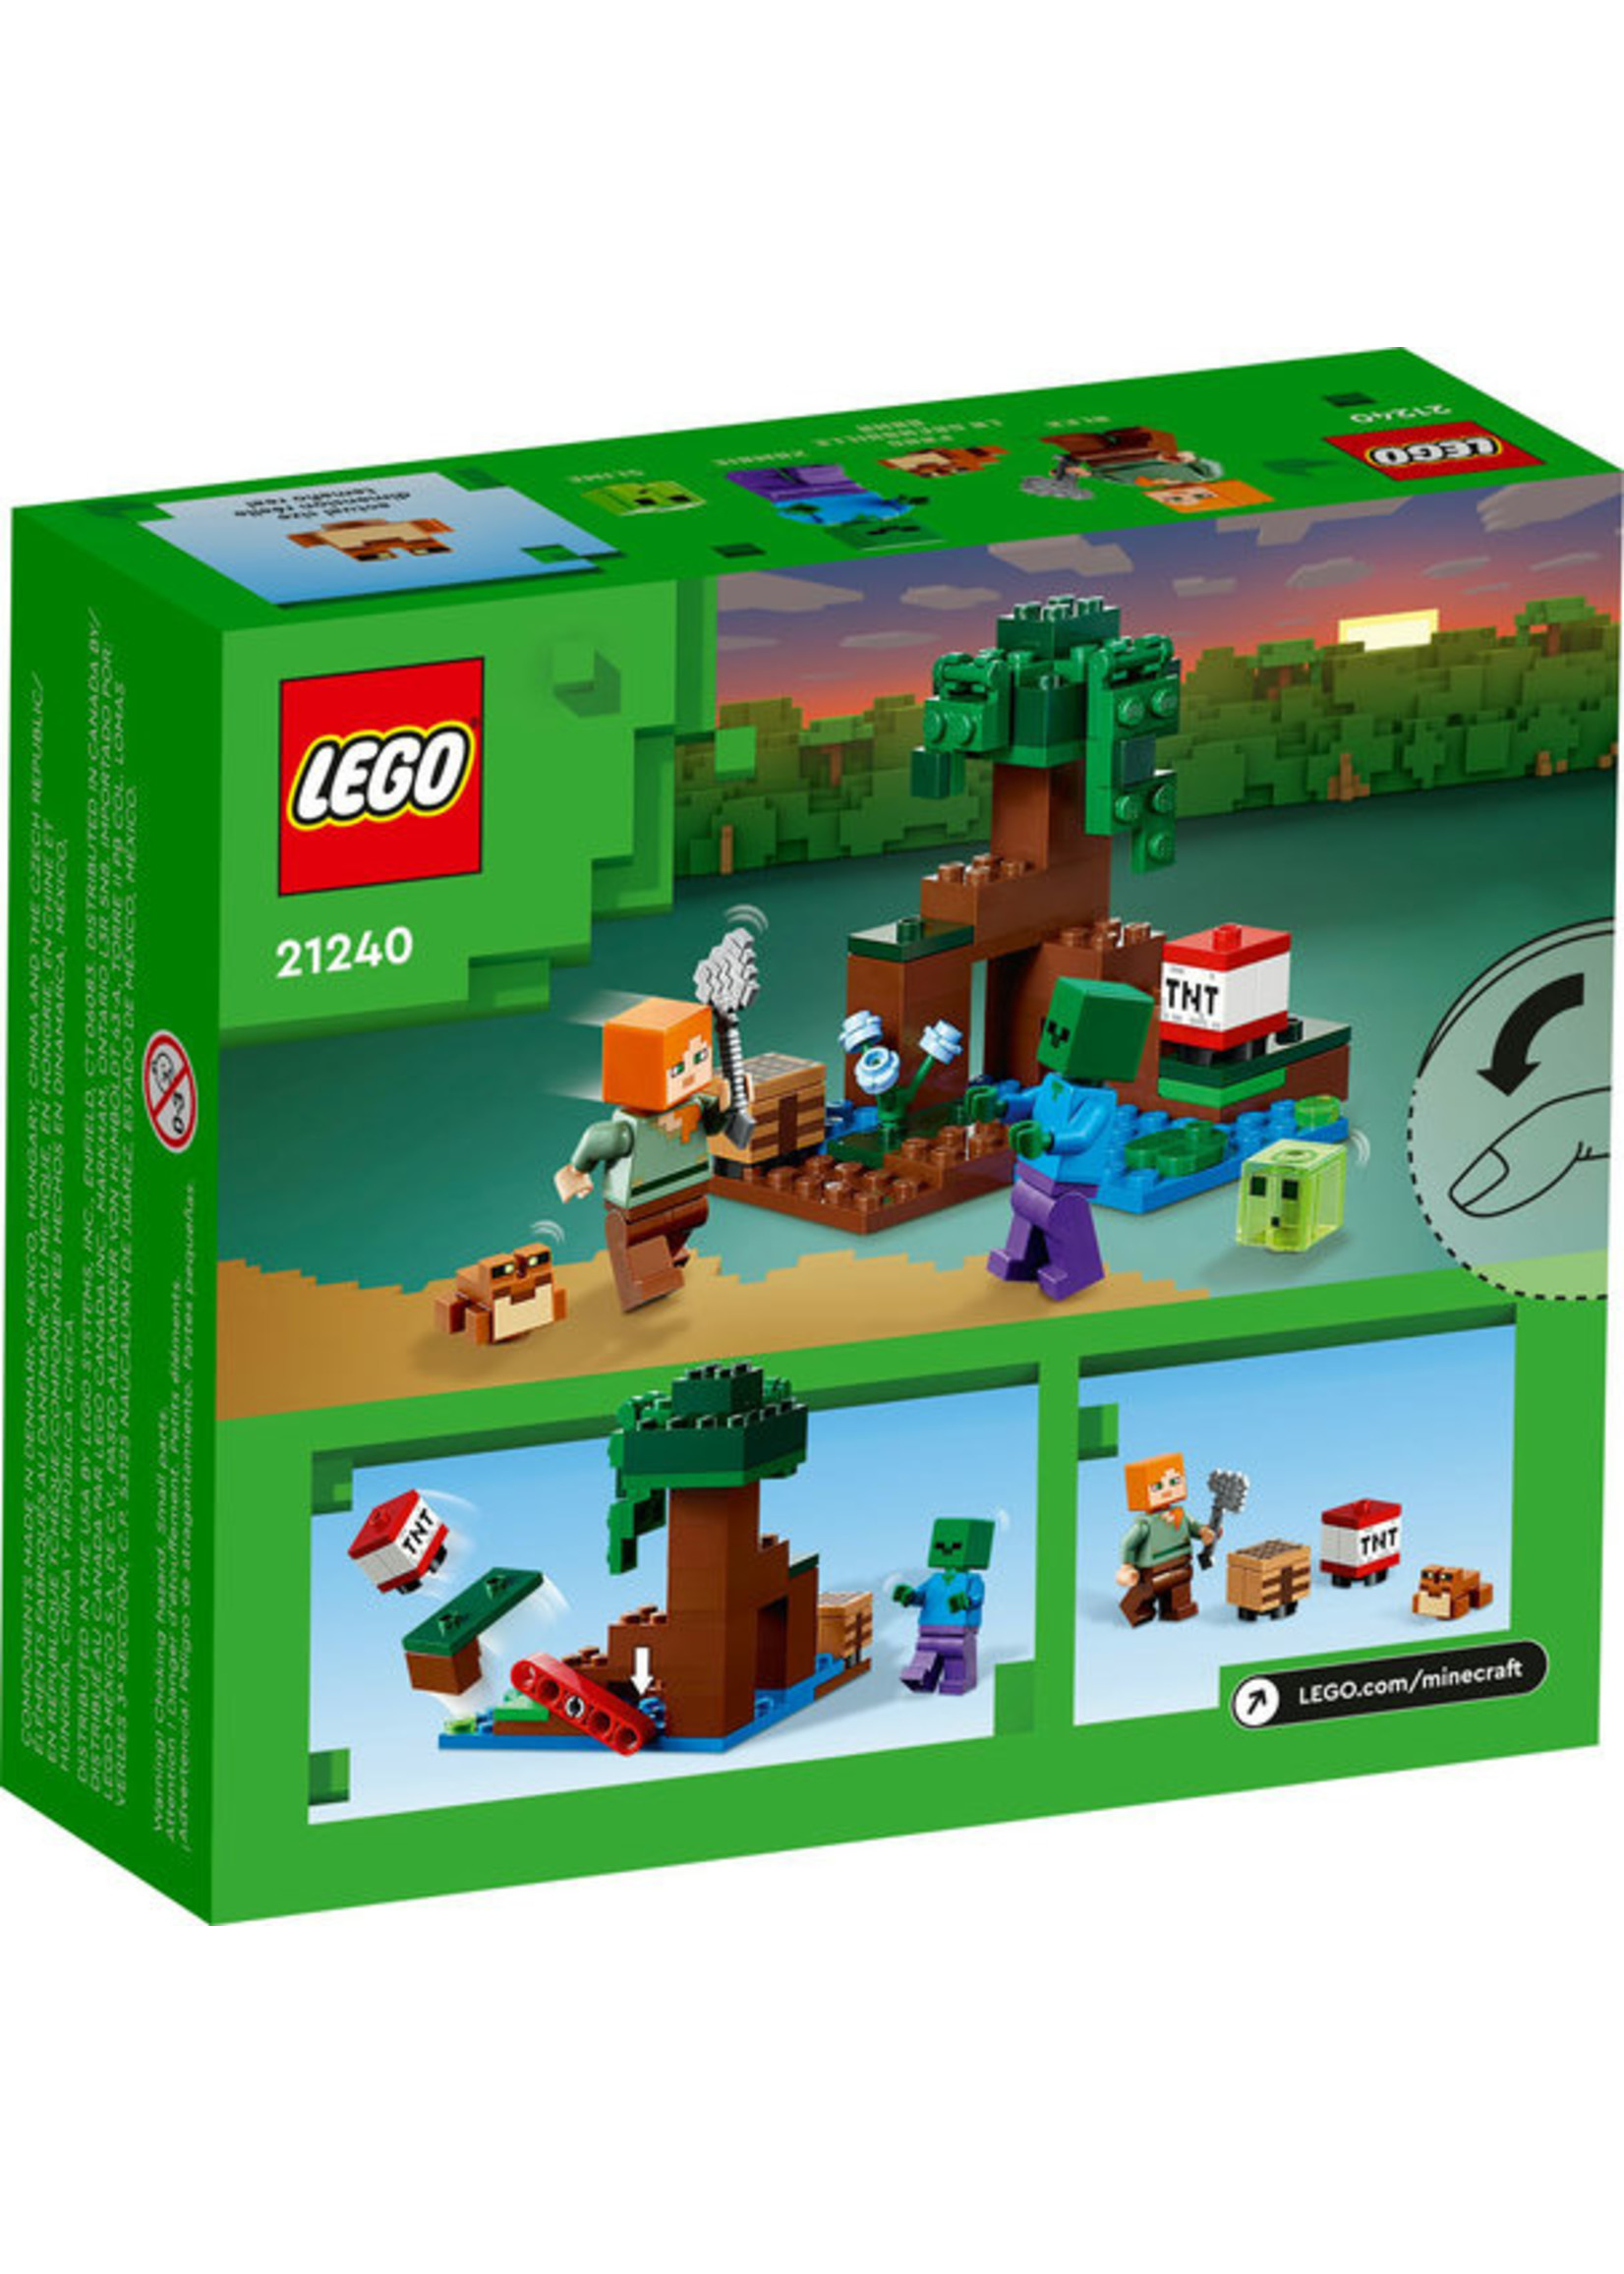 LEGO 21240 - The Swamp Adventure